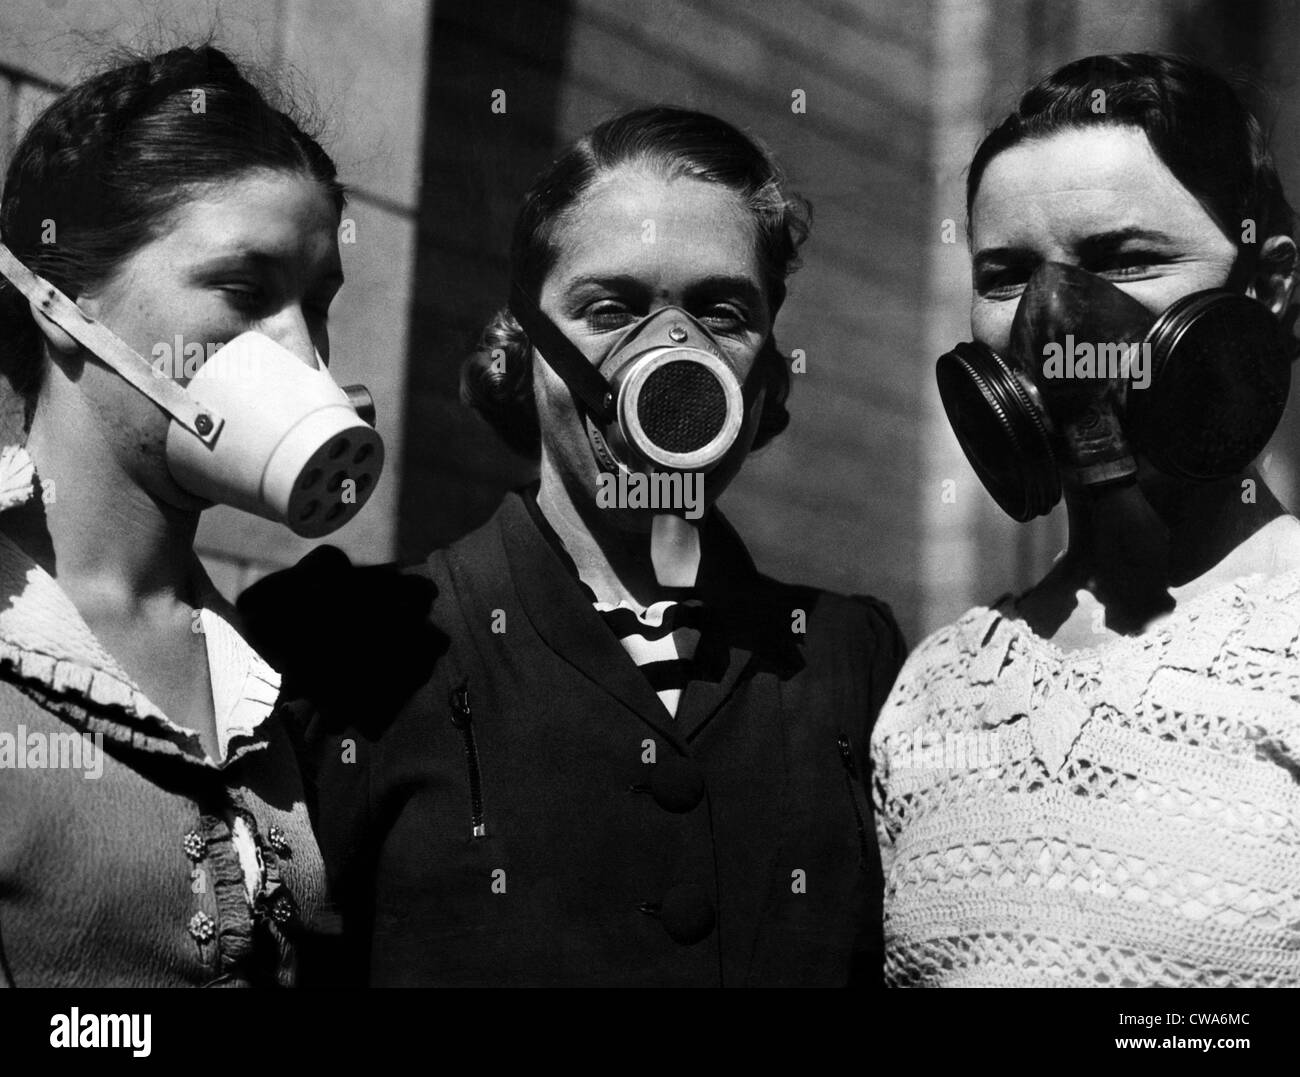 Maschere antipolvere indossata durante la vaschetta della polvere, 1936. La cortesia: Archivi CSU/Everett Collection Foto Stock